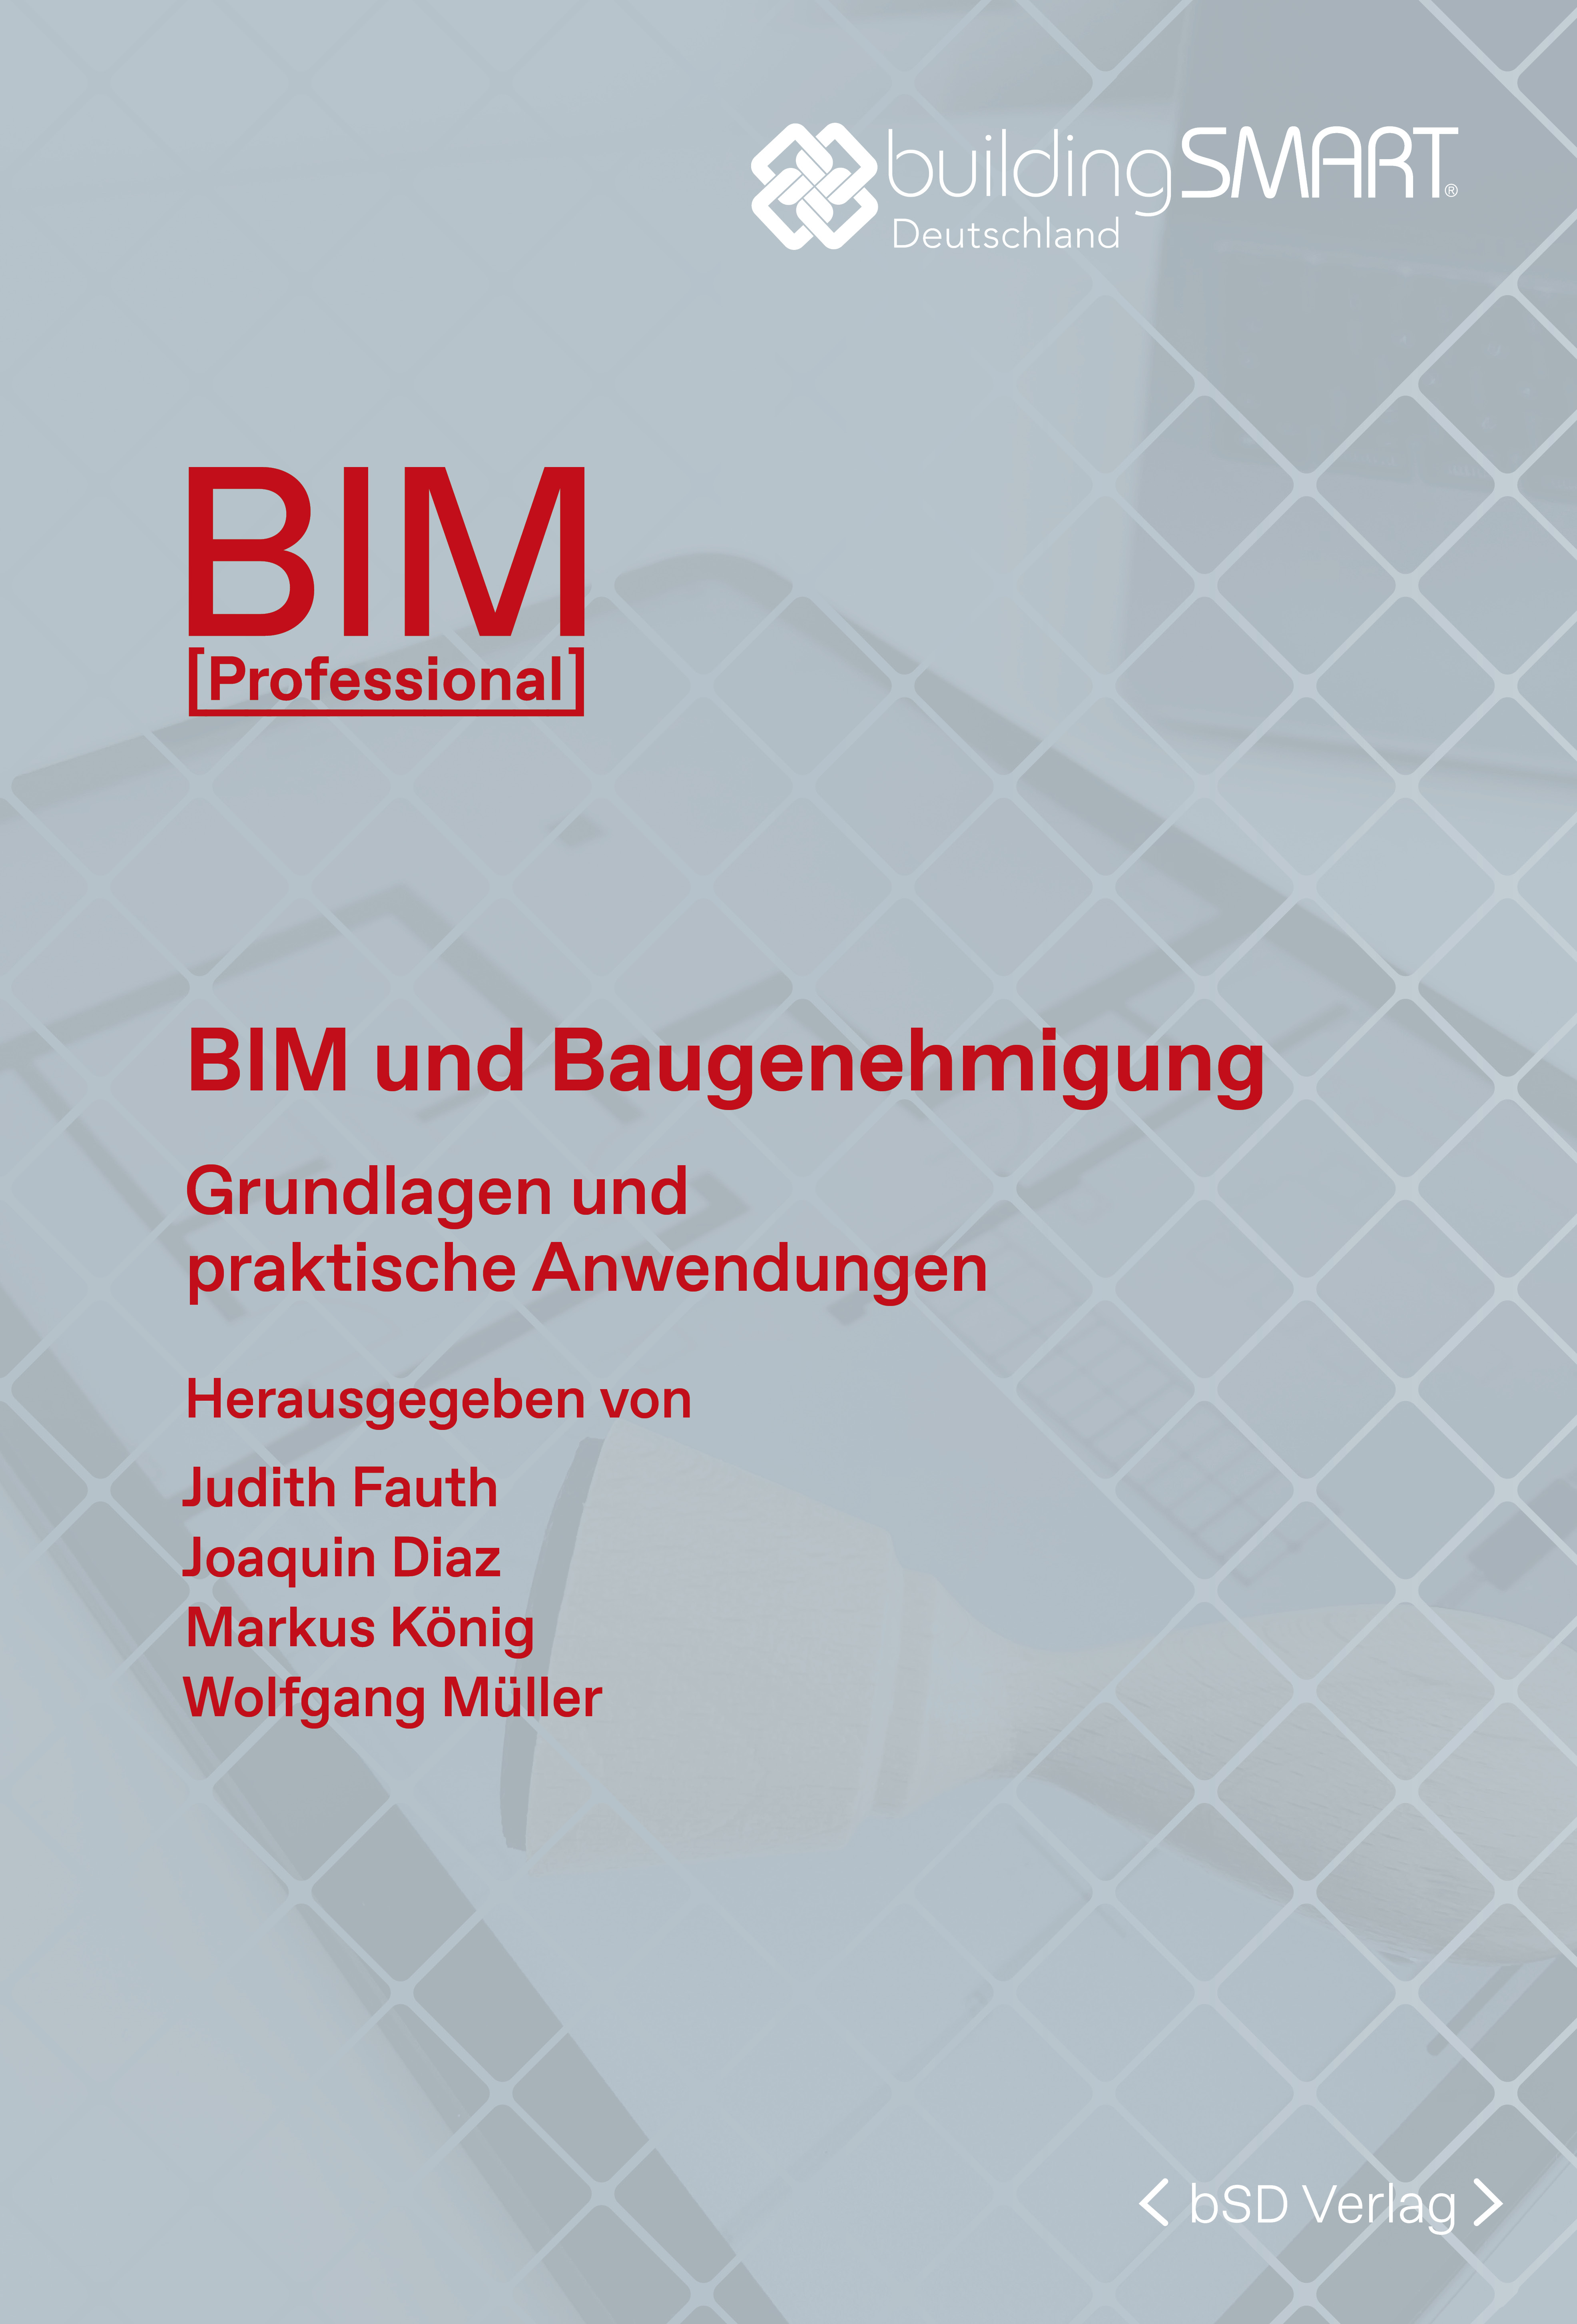 bSD Verlag/BIM Professional: BIM und Baugenehmigung